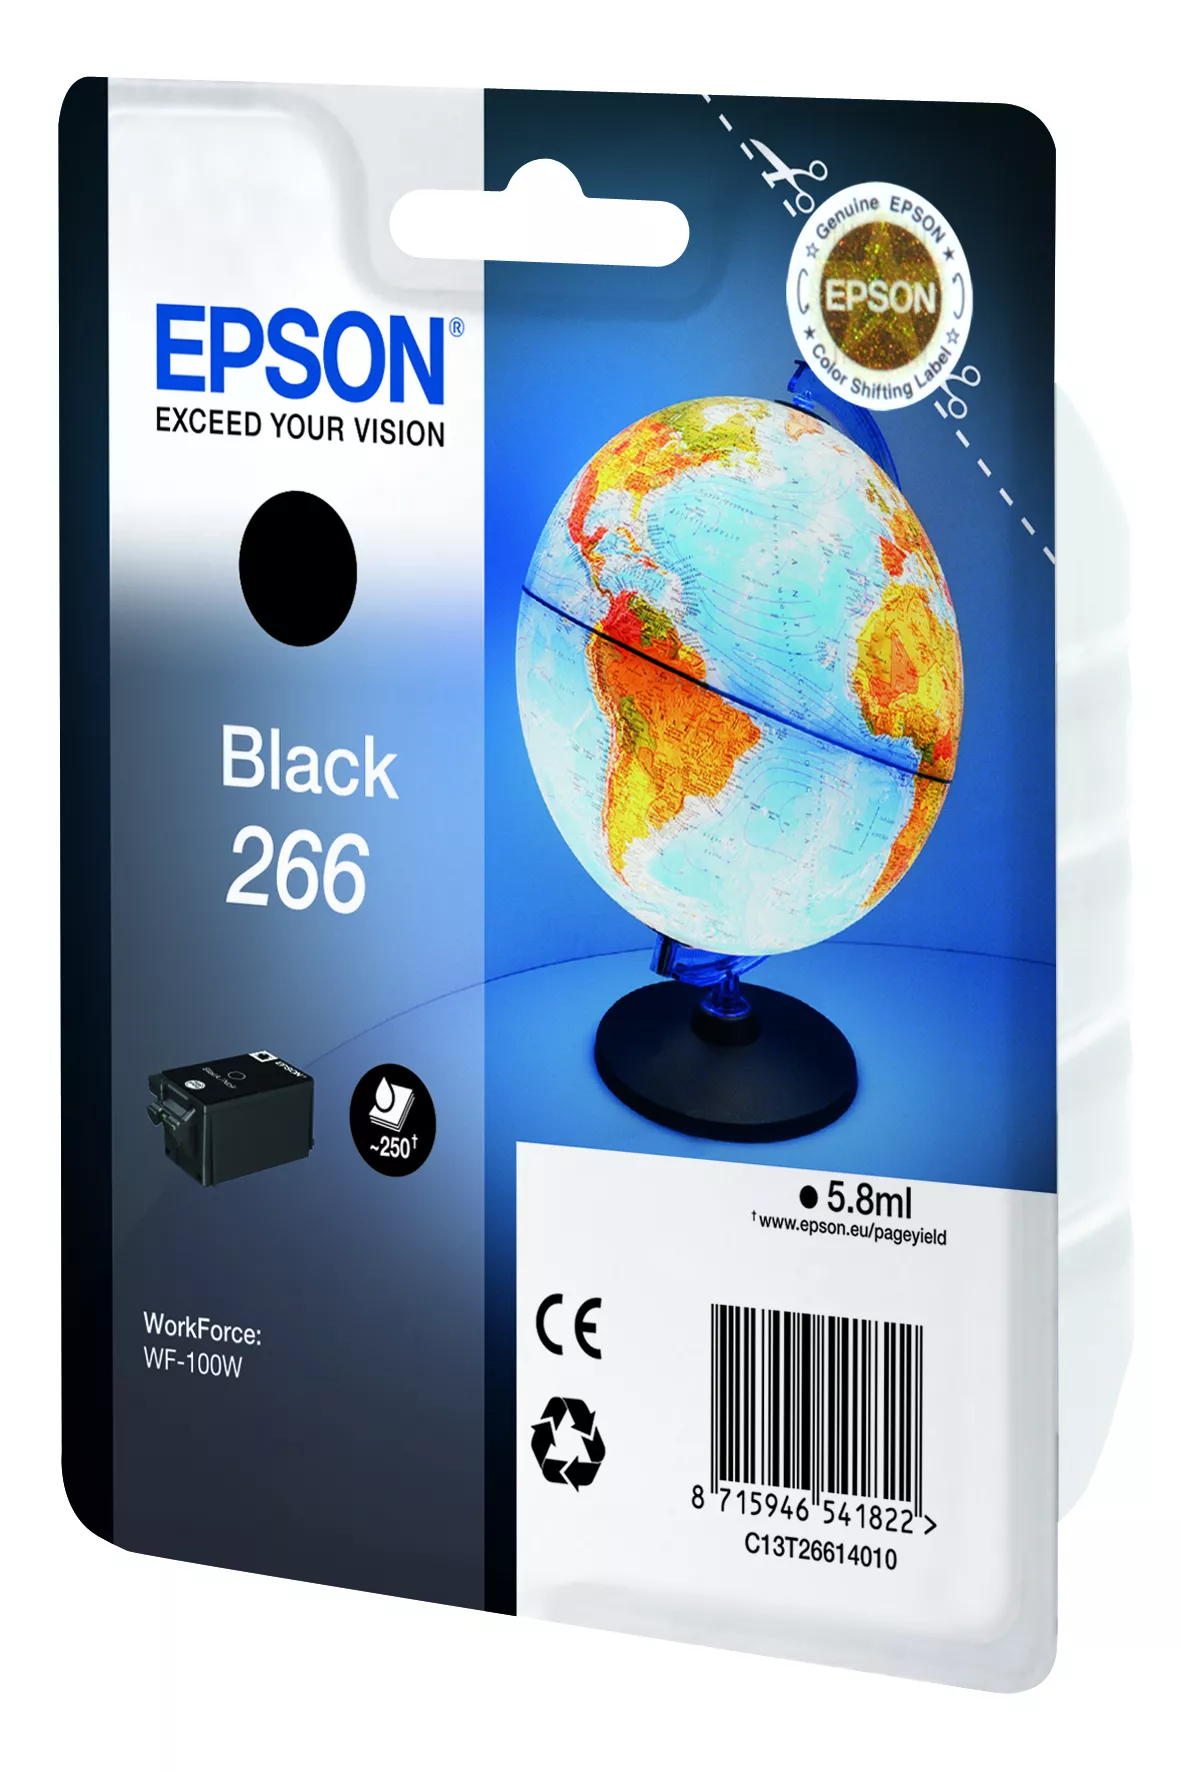 Vente EPSON 266 cartouche dencre noir capacité standard 250 Epson au meilleur prix - visuel 2